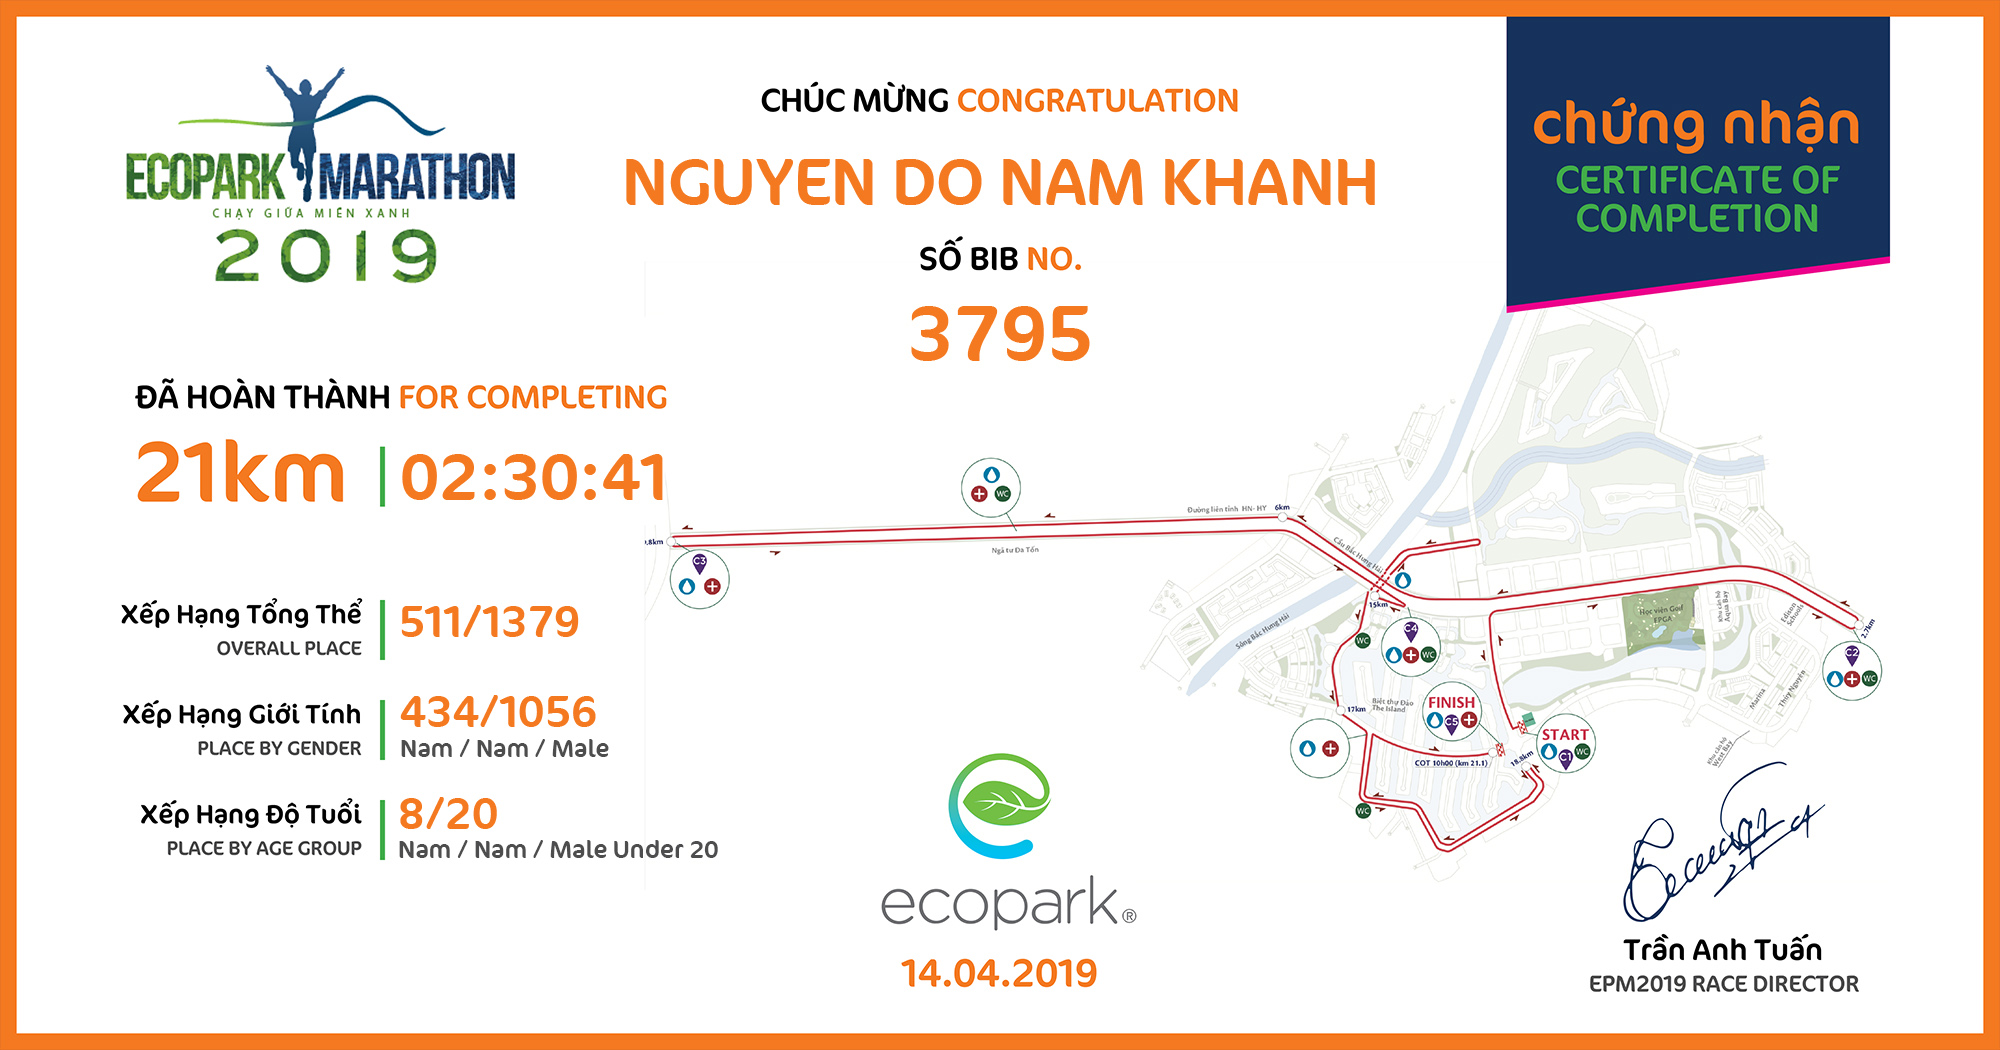 3795 - Nguyen Do Nam Khanh